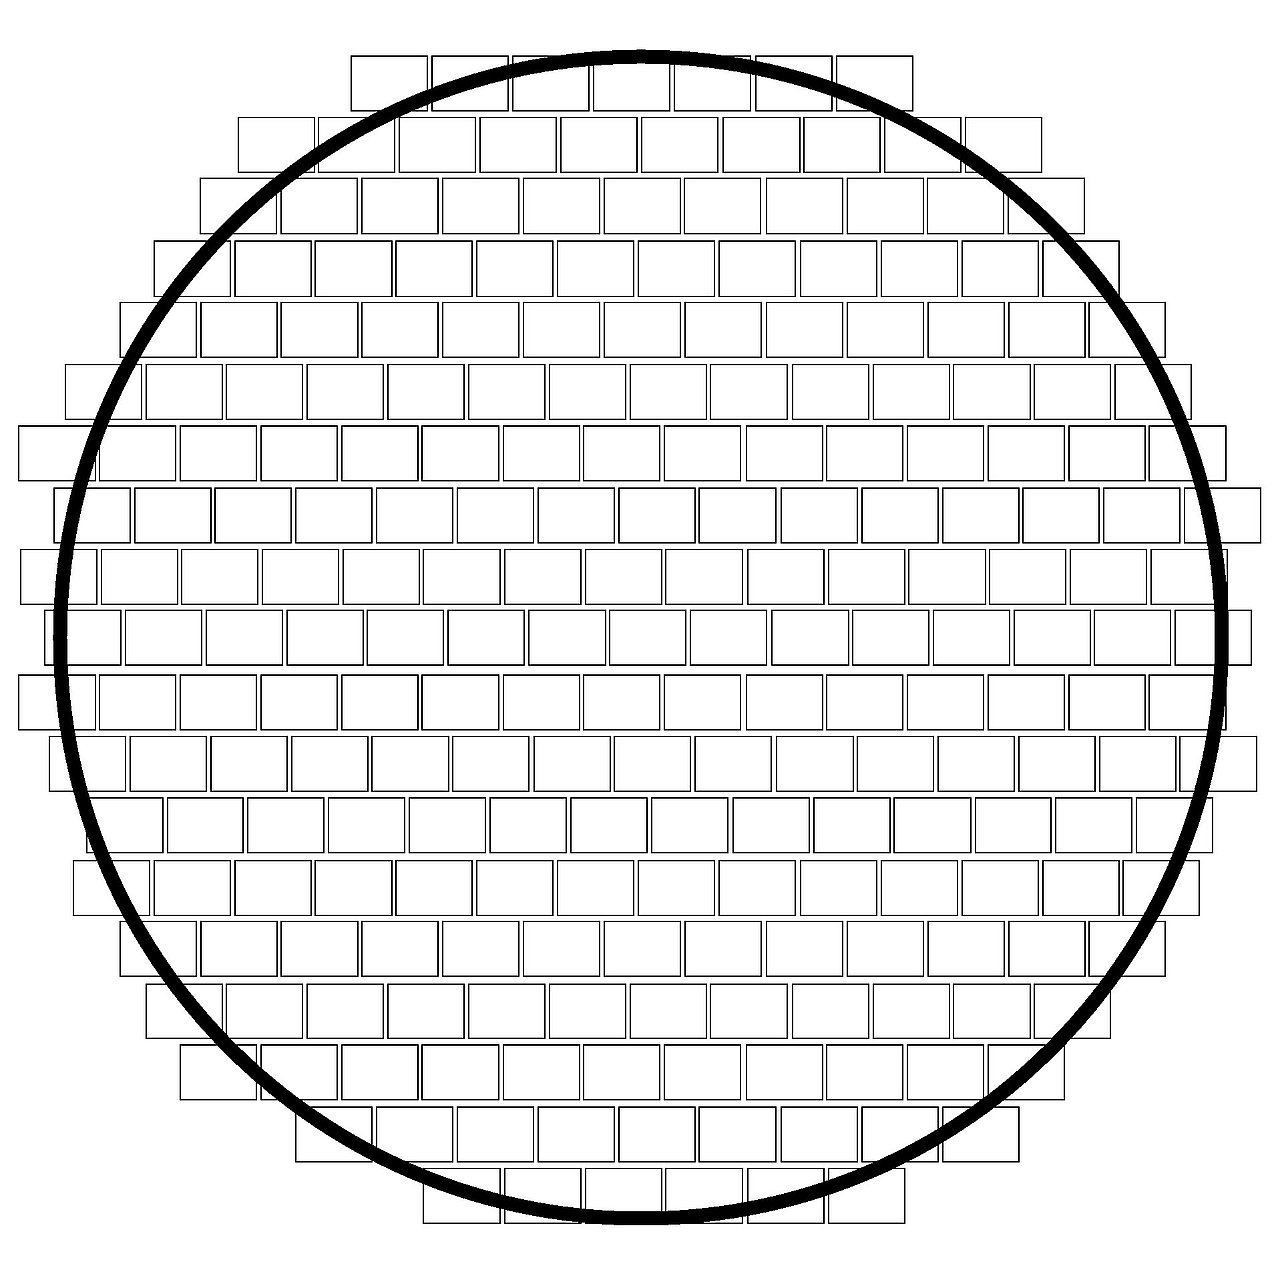 Vista superior de un círculo para hacer cuerda: las planchas se colocan con una separación